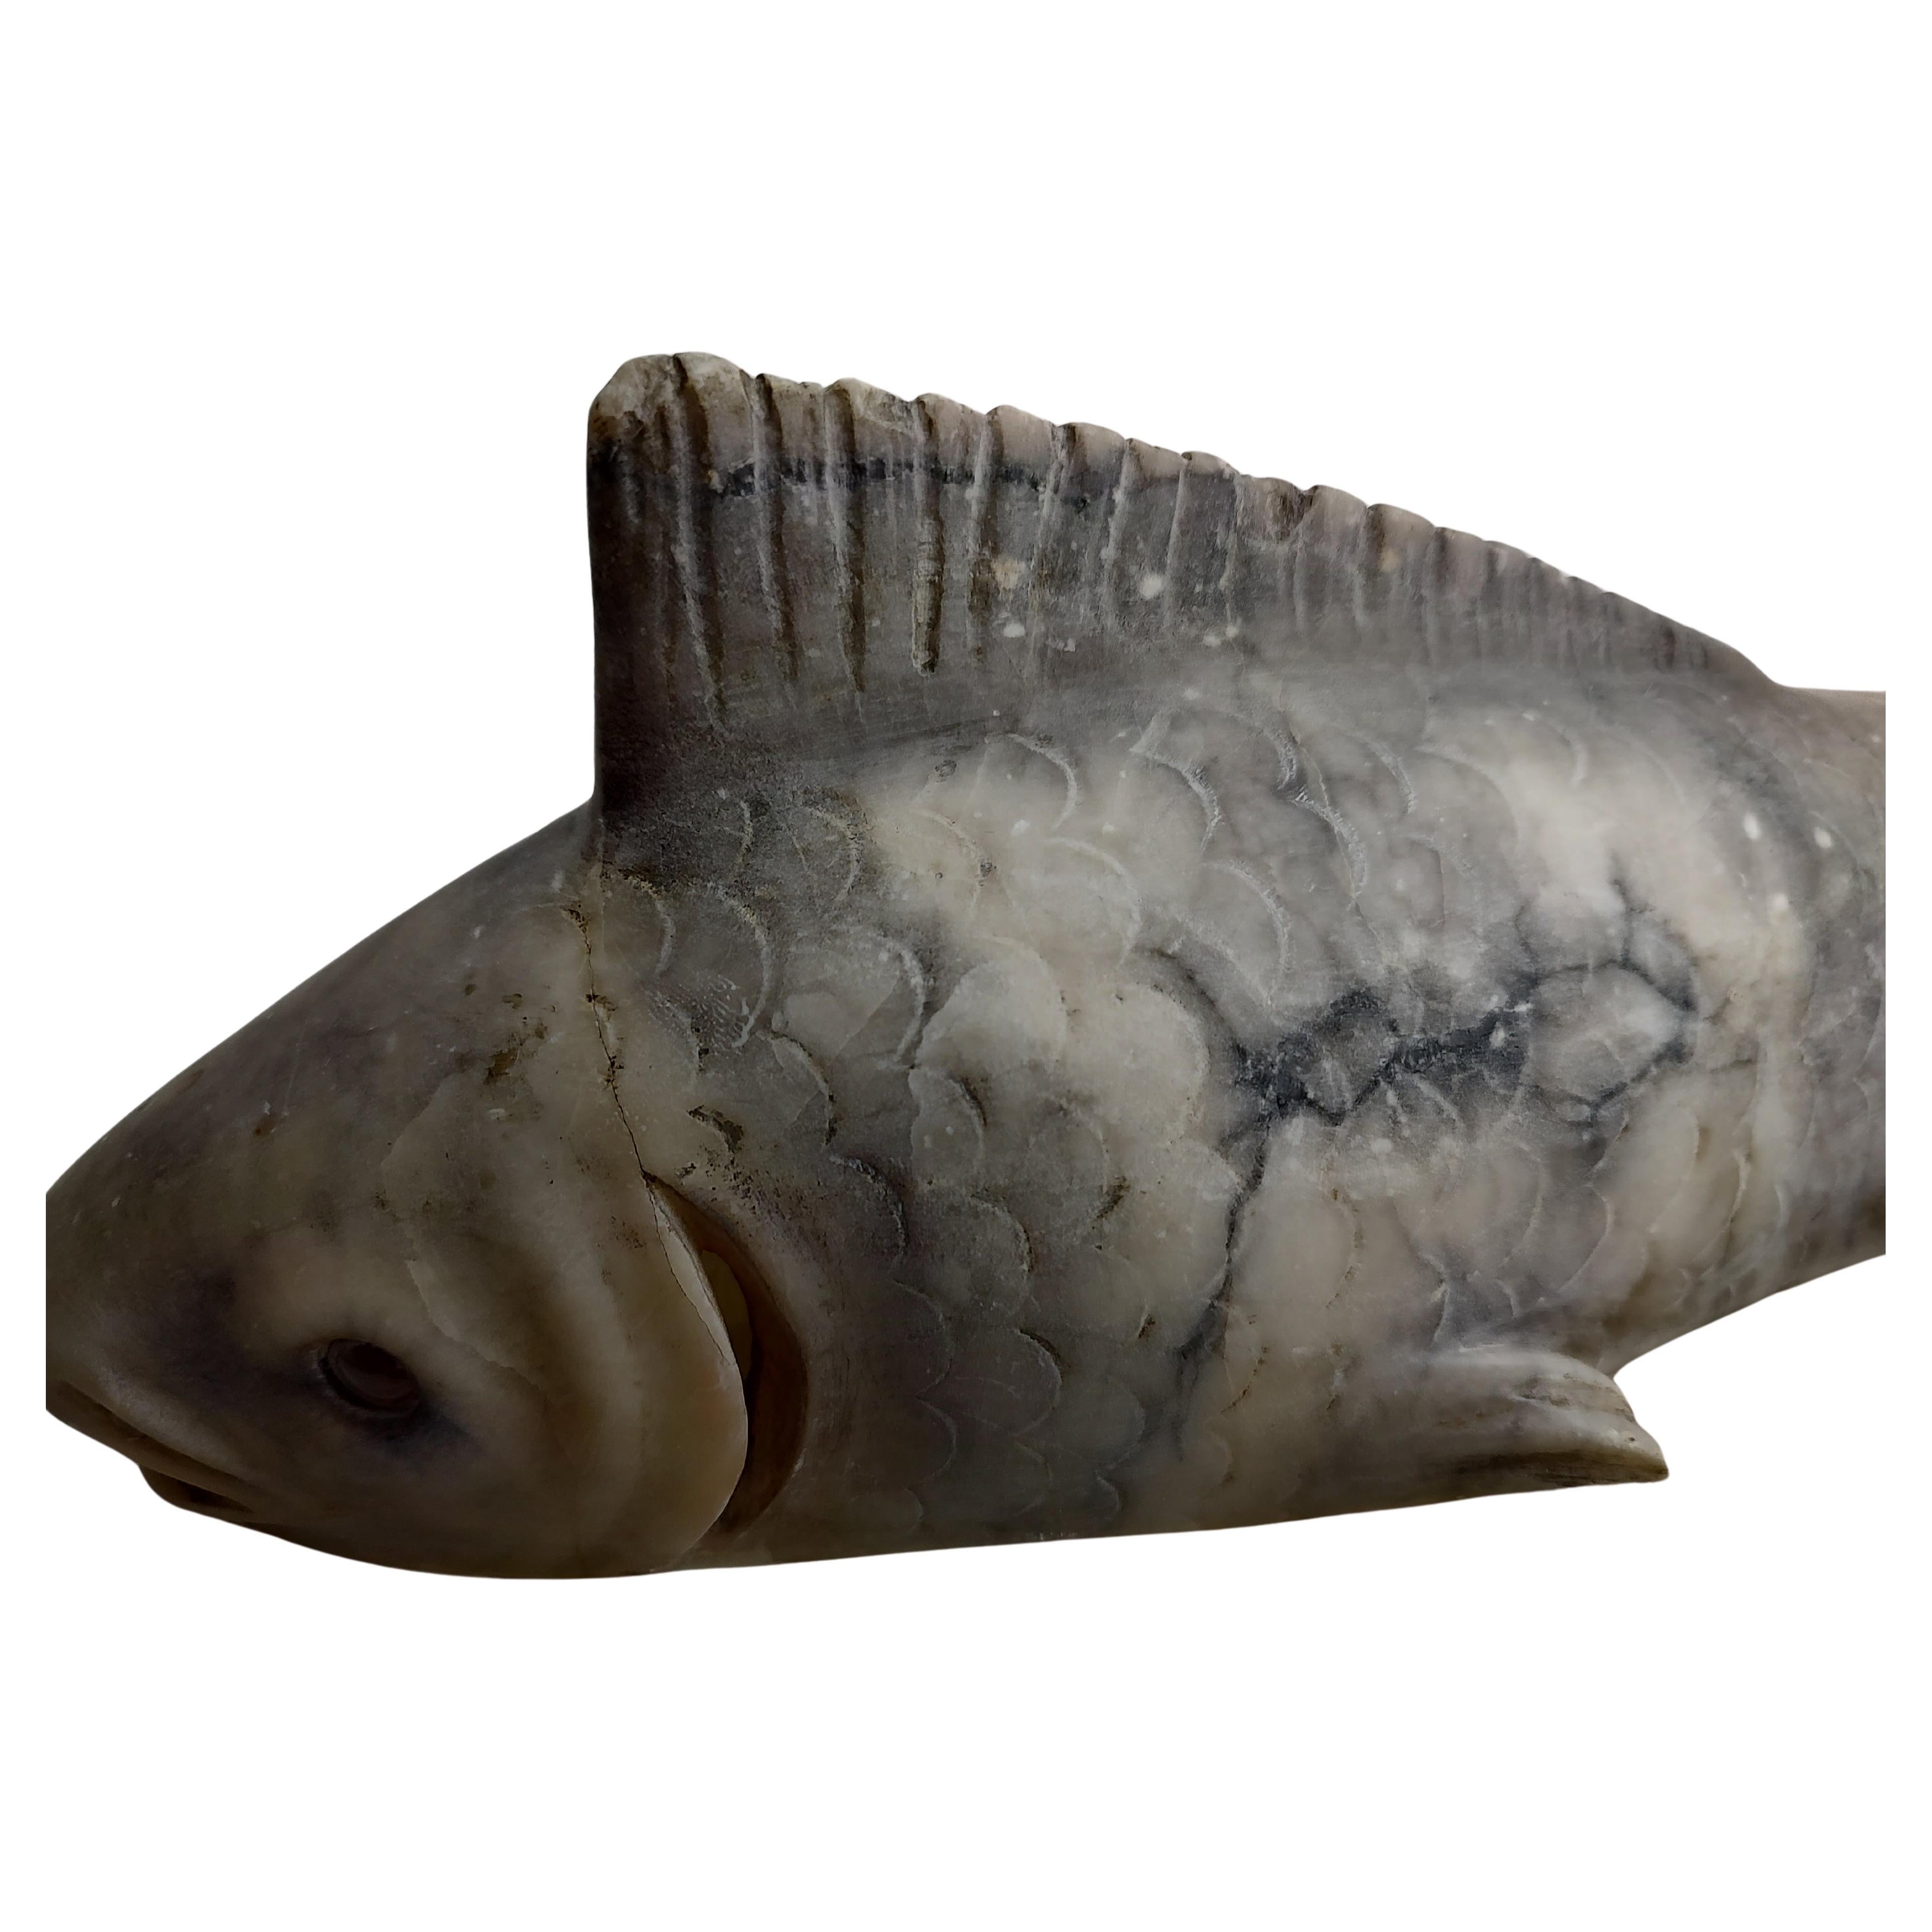 Fabuleuse veilleuse poisson lampe de table. Sculptée dans l'albâtre en deux parties. Le poisson se place dans une forme sculptée de type berceau et le fixe. Interrupteur en ligne et, lorsqu'ils sont allumés, les yeux des poissons brillent d'un éclat